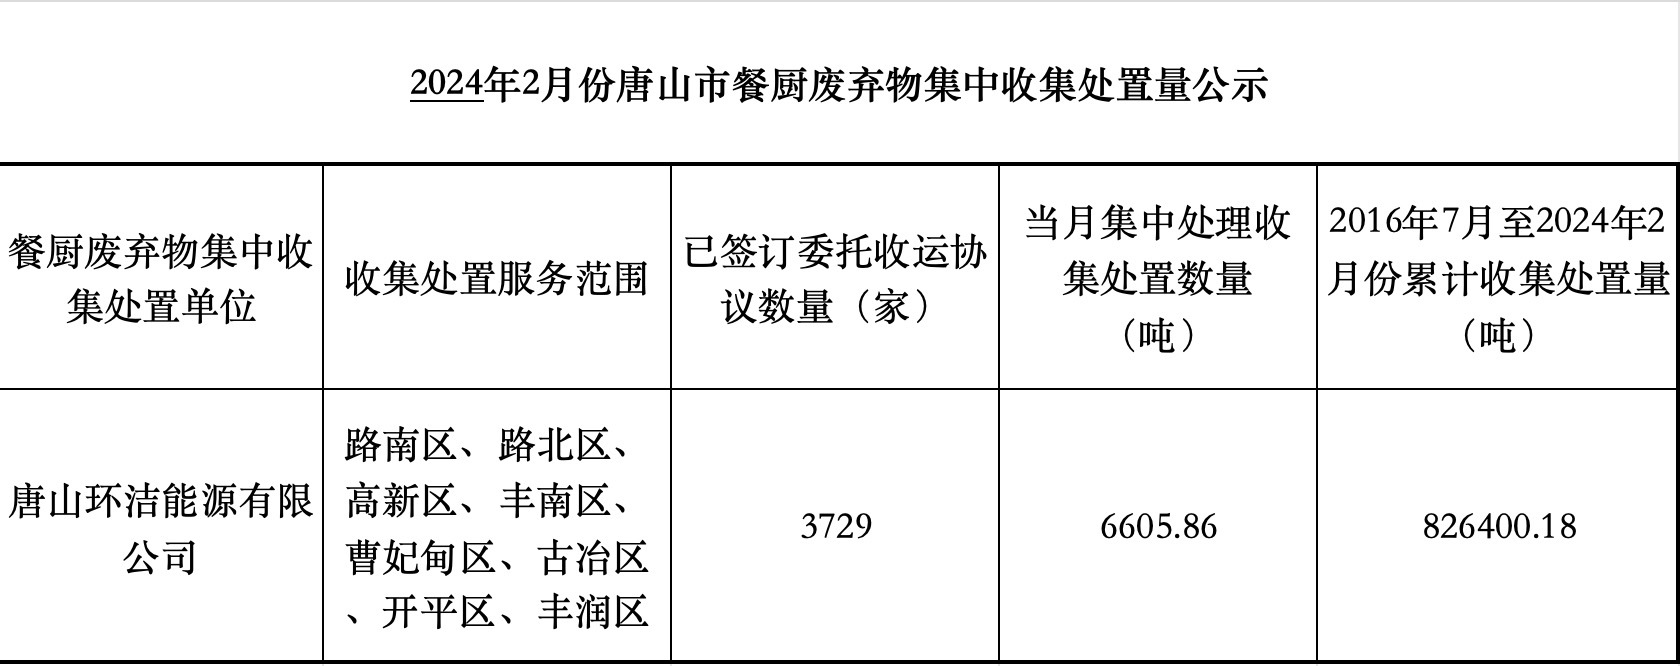 2024年2月份唐山市餐厨废弃物集中收集处置量公示